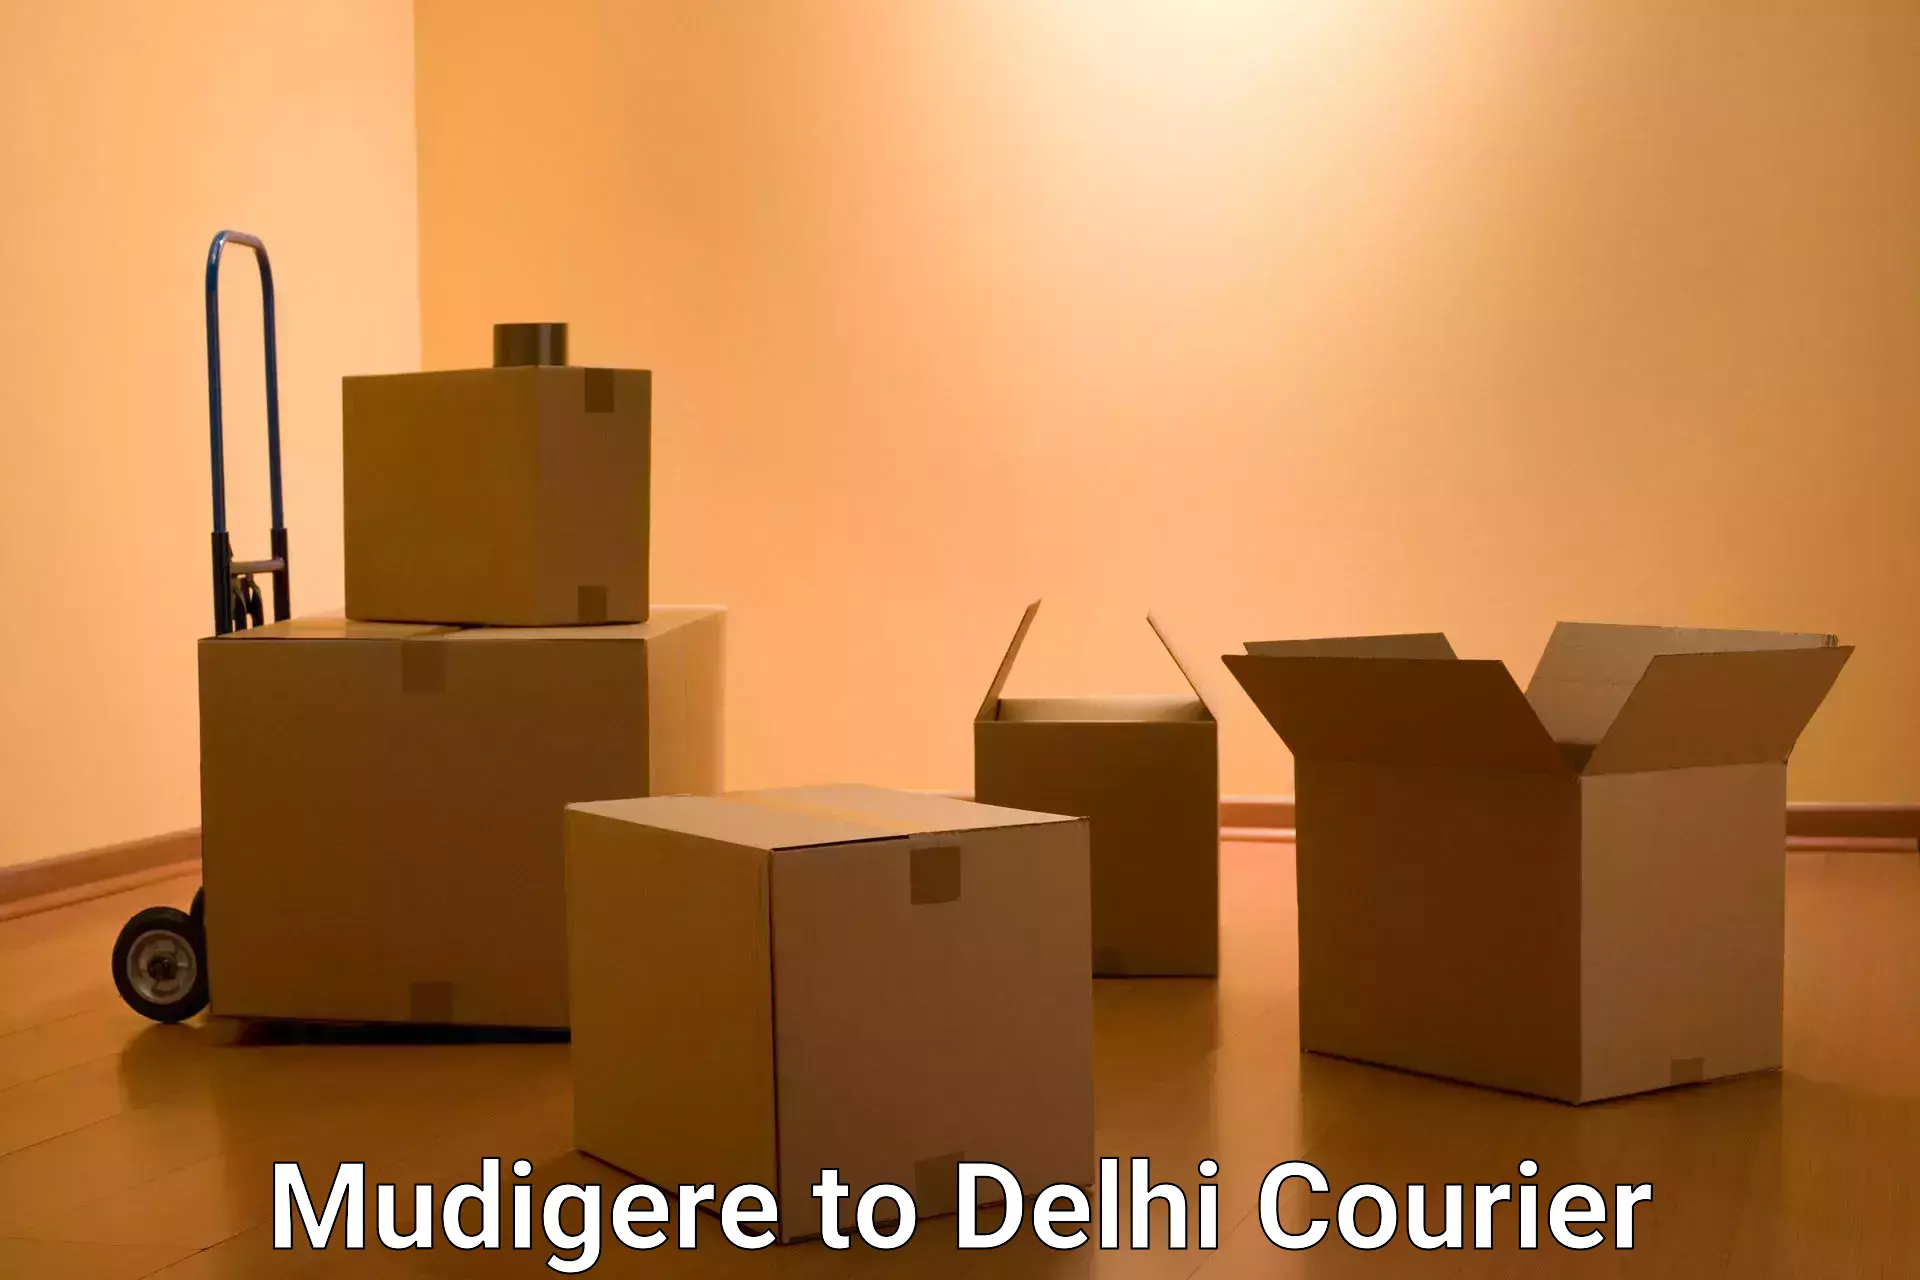 24/7 courier service Mudigere to Delhi